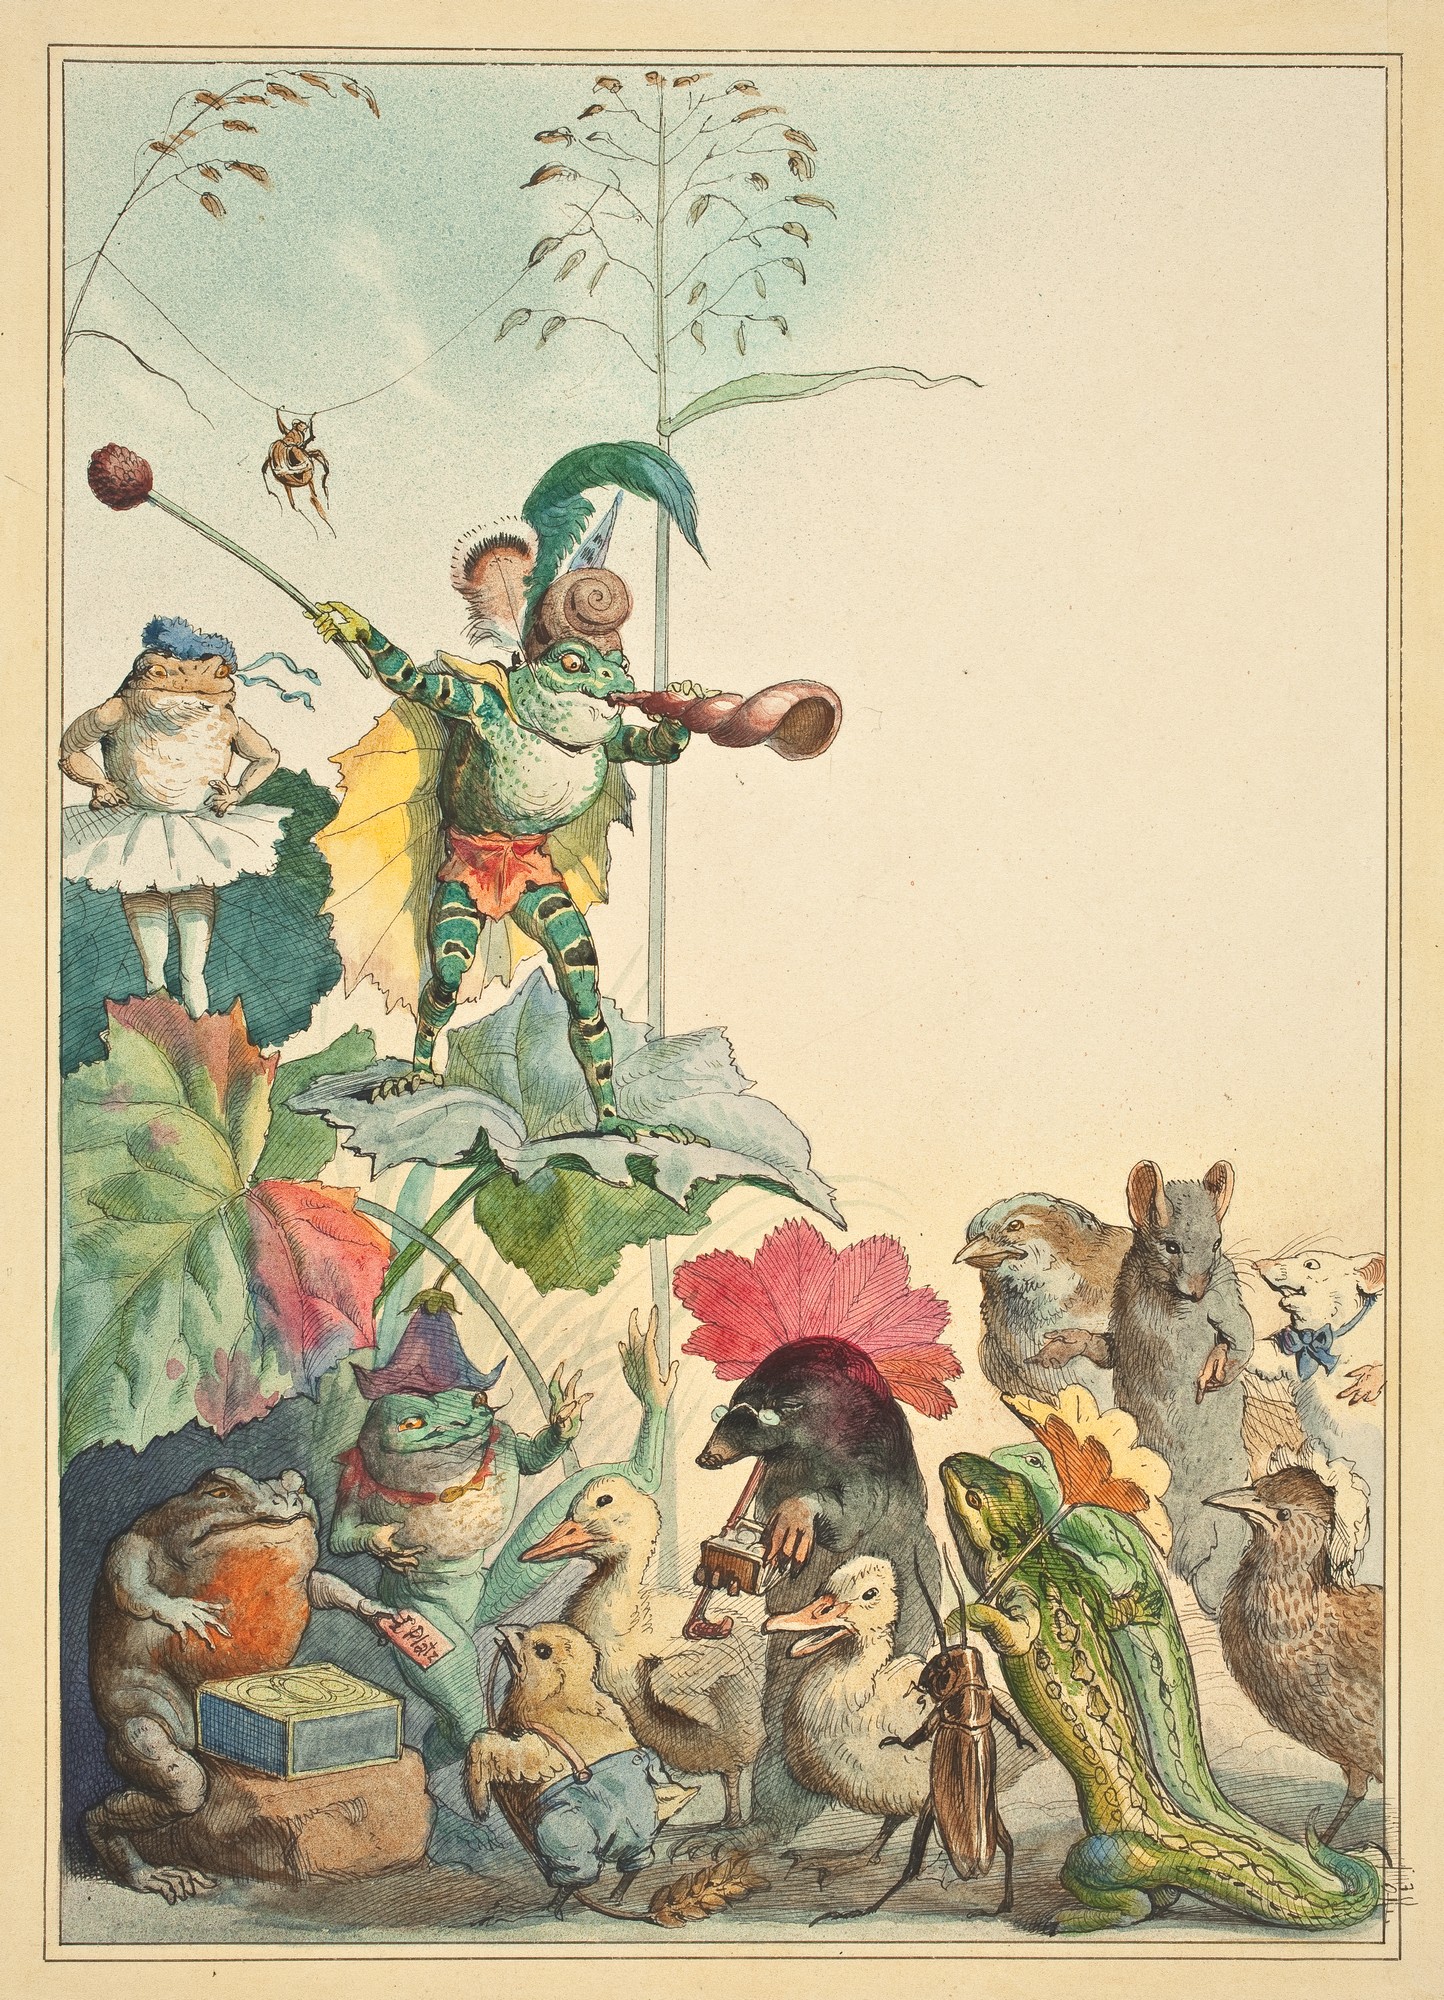 Fedor Flinzer, „Teatr żab” – projekt ilustracji do książki dla dzieci napisanej przez Juliusa Lohmeyera, 1880, rysunek (akwarela, tusz), Muzeum Narodowe we Wrocławiu (źródło: materiały prasowe organizatora)